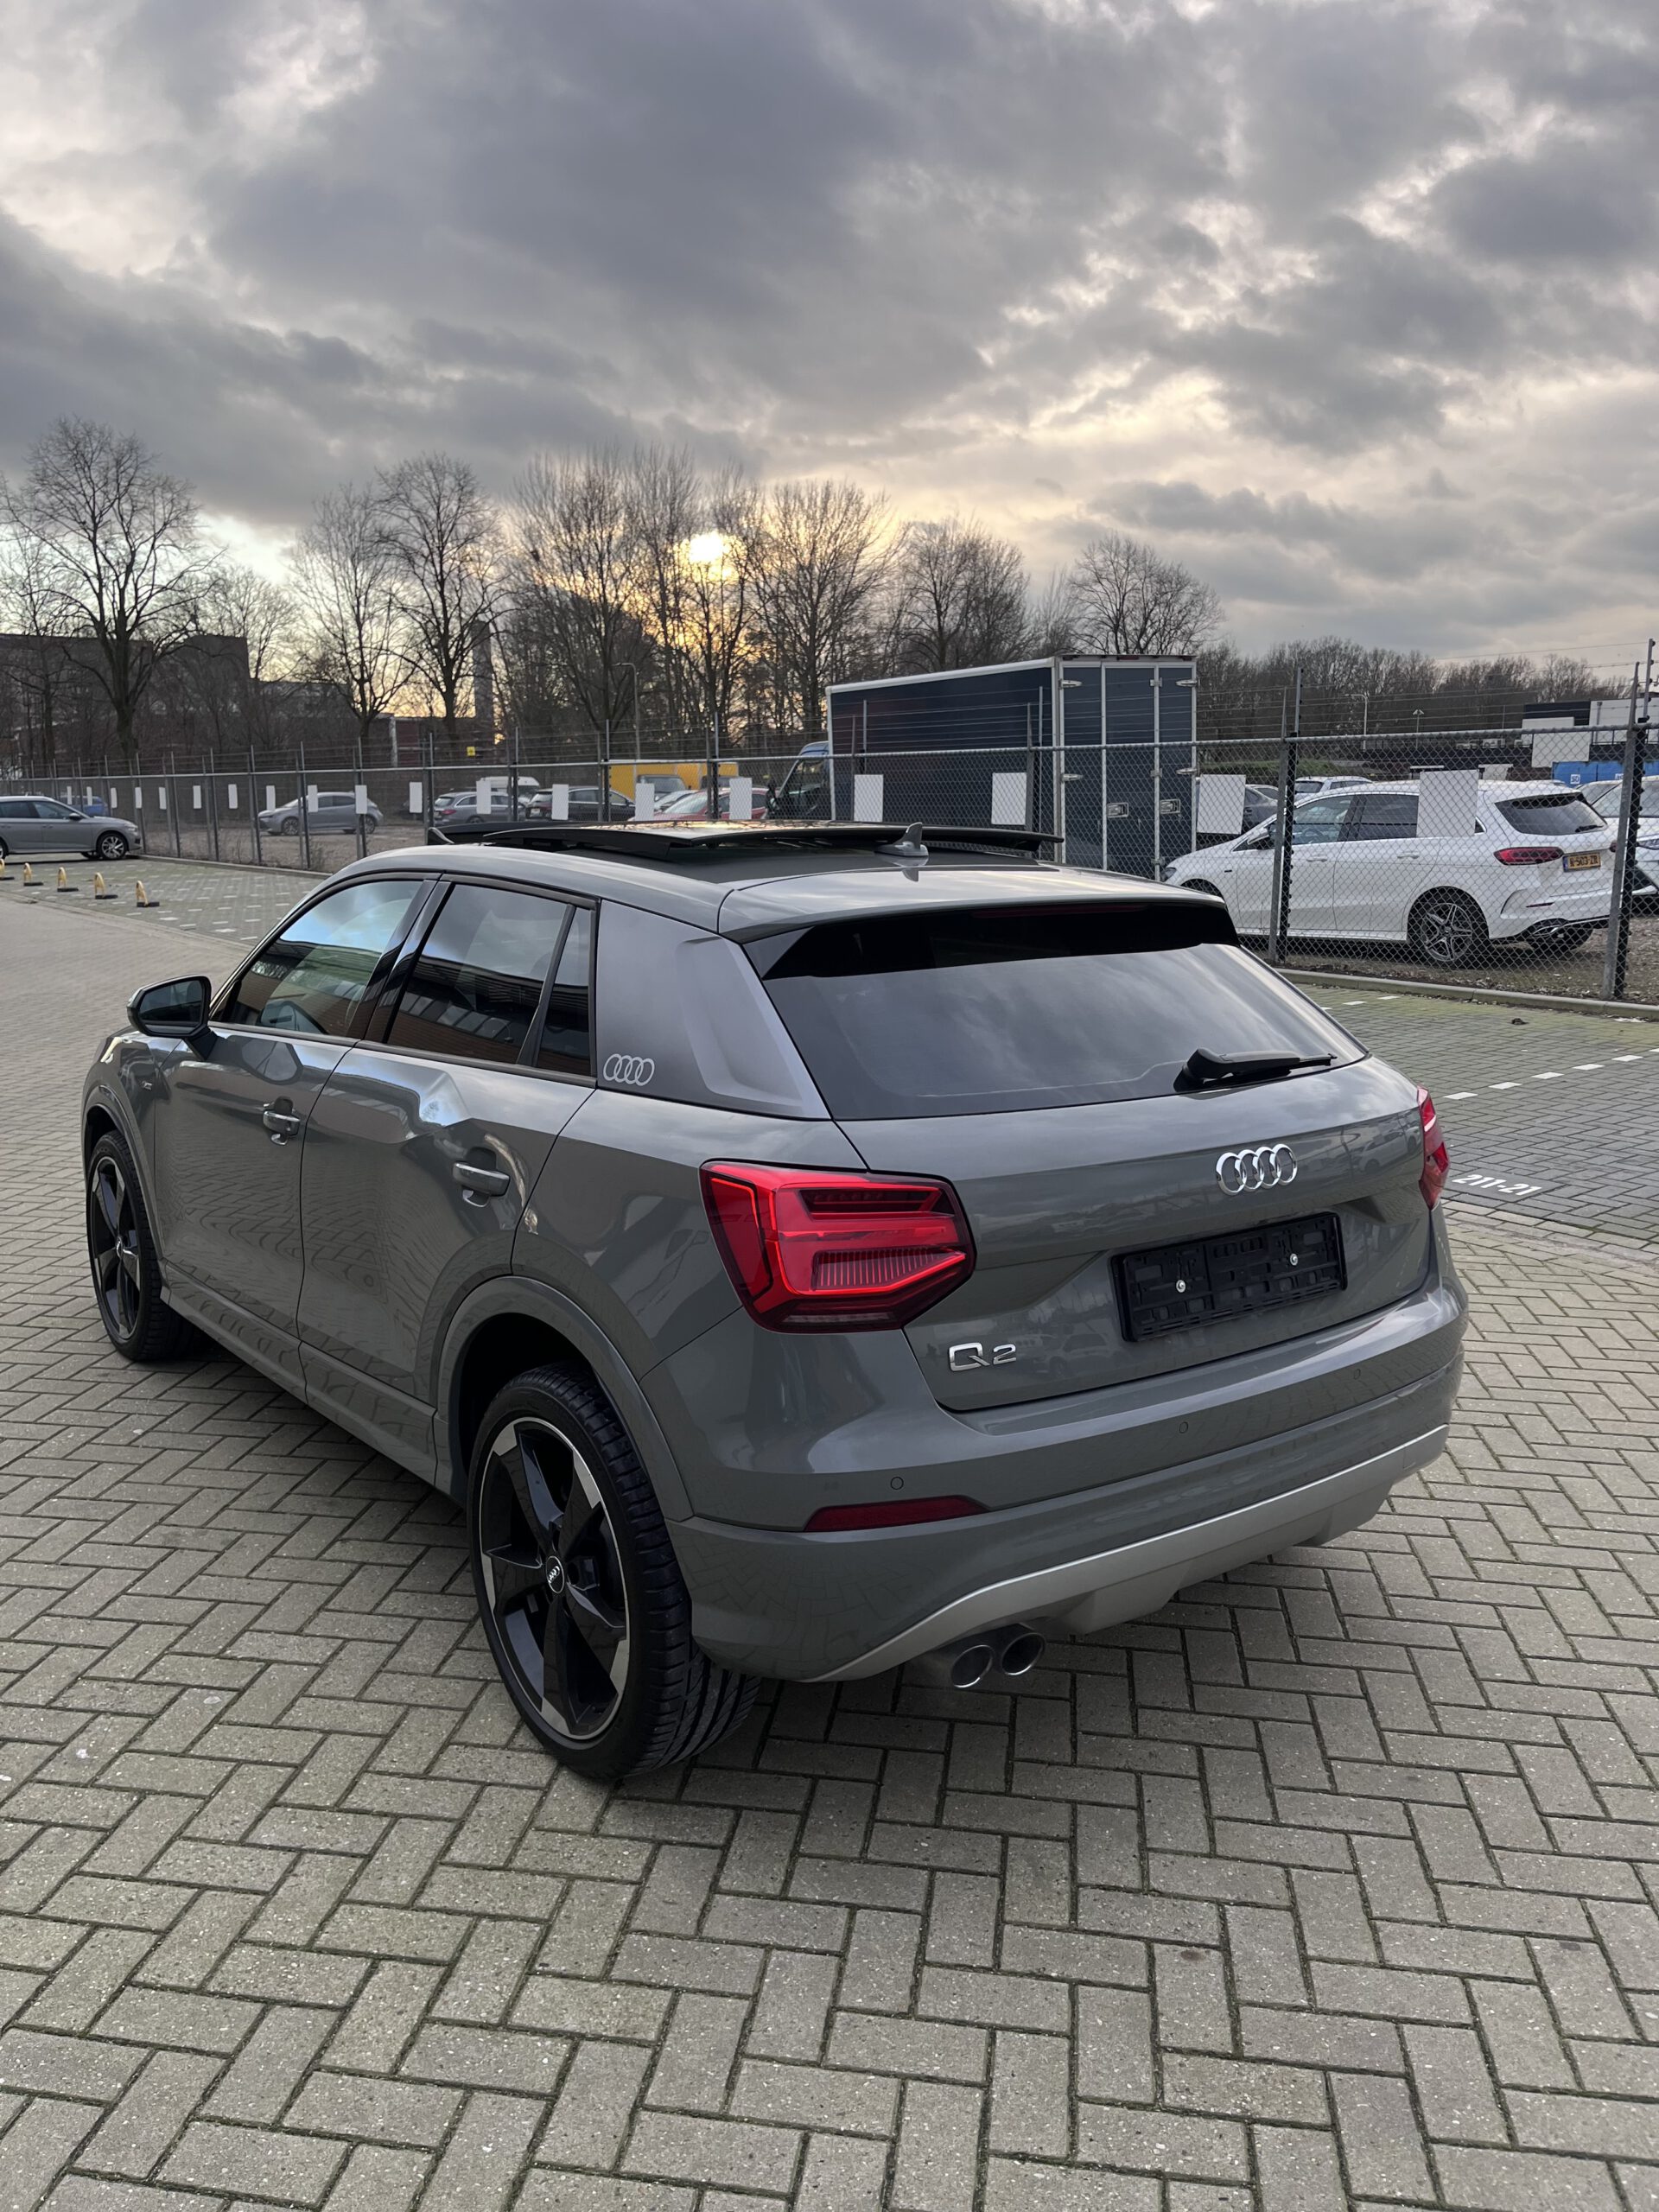 Audi Q2 2019 waarvan de ramen geblindeerd zijn, de auto staat geparkeerd in Den Haag